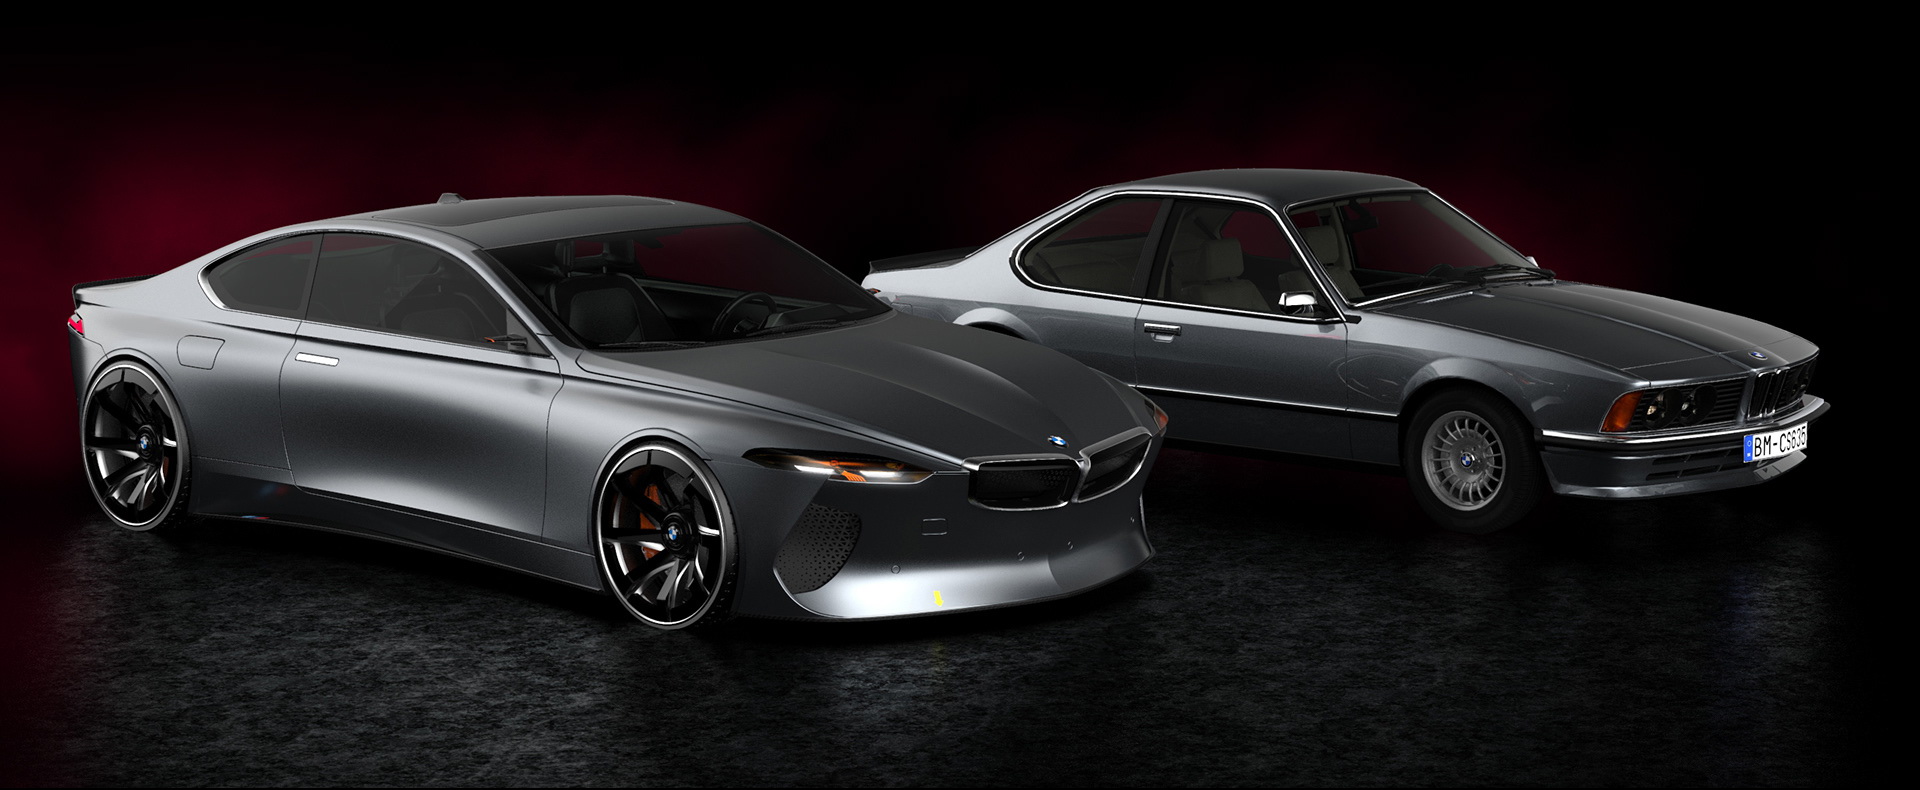 Render do BMW Série 6 do futuro